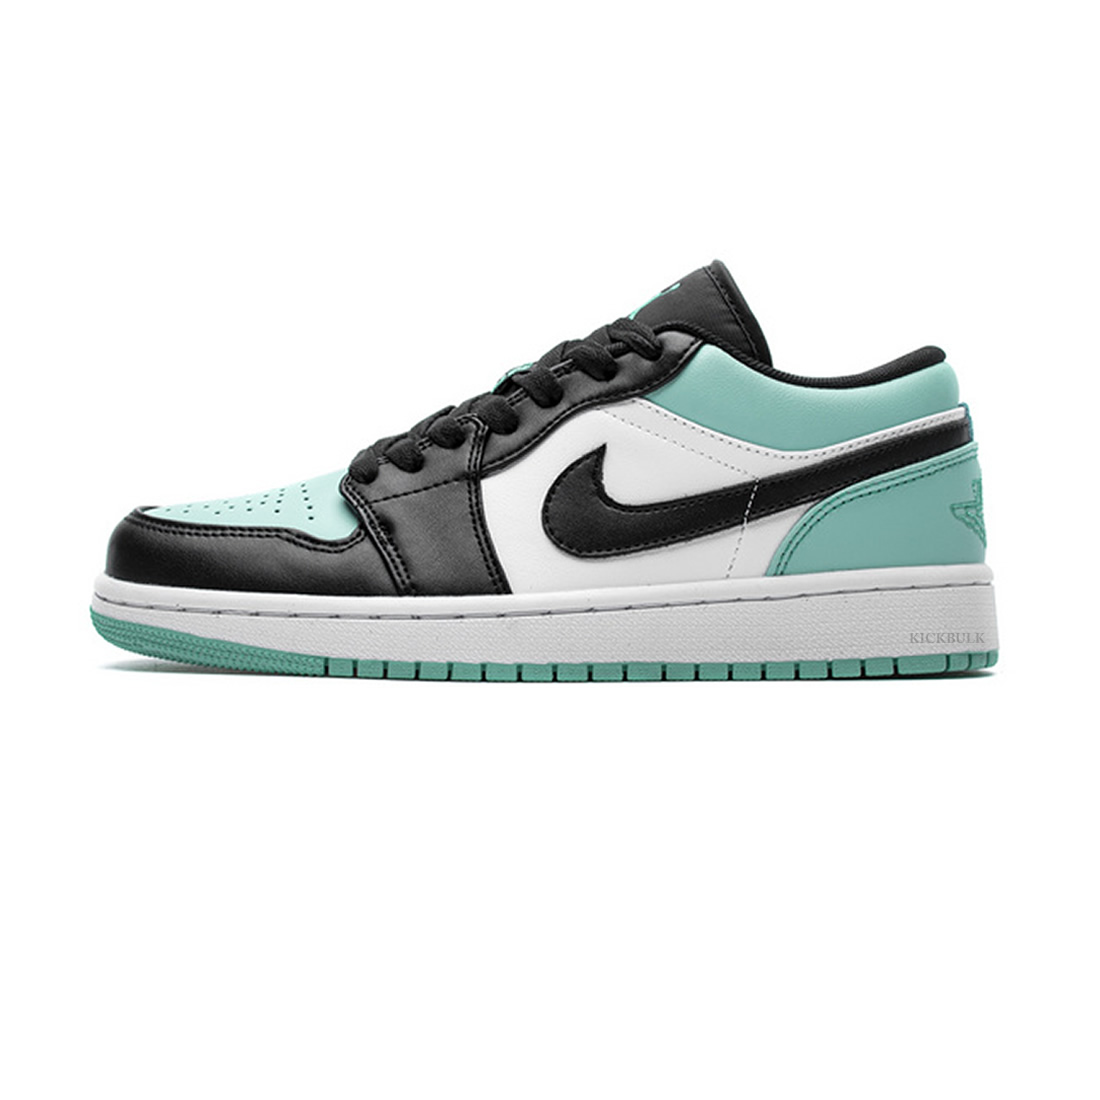 Nike Air Jordan 1 Low Emerald Toe 553558 117 1 - www.kickbulk.cc